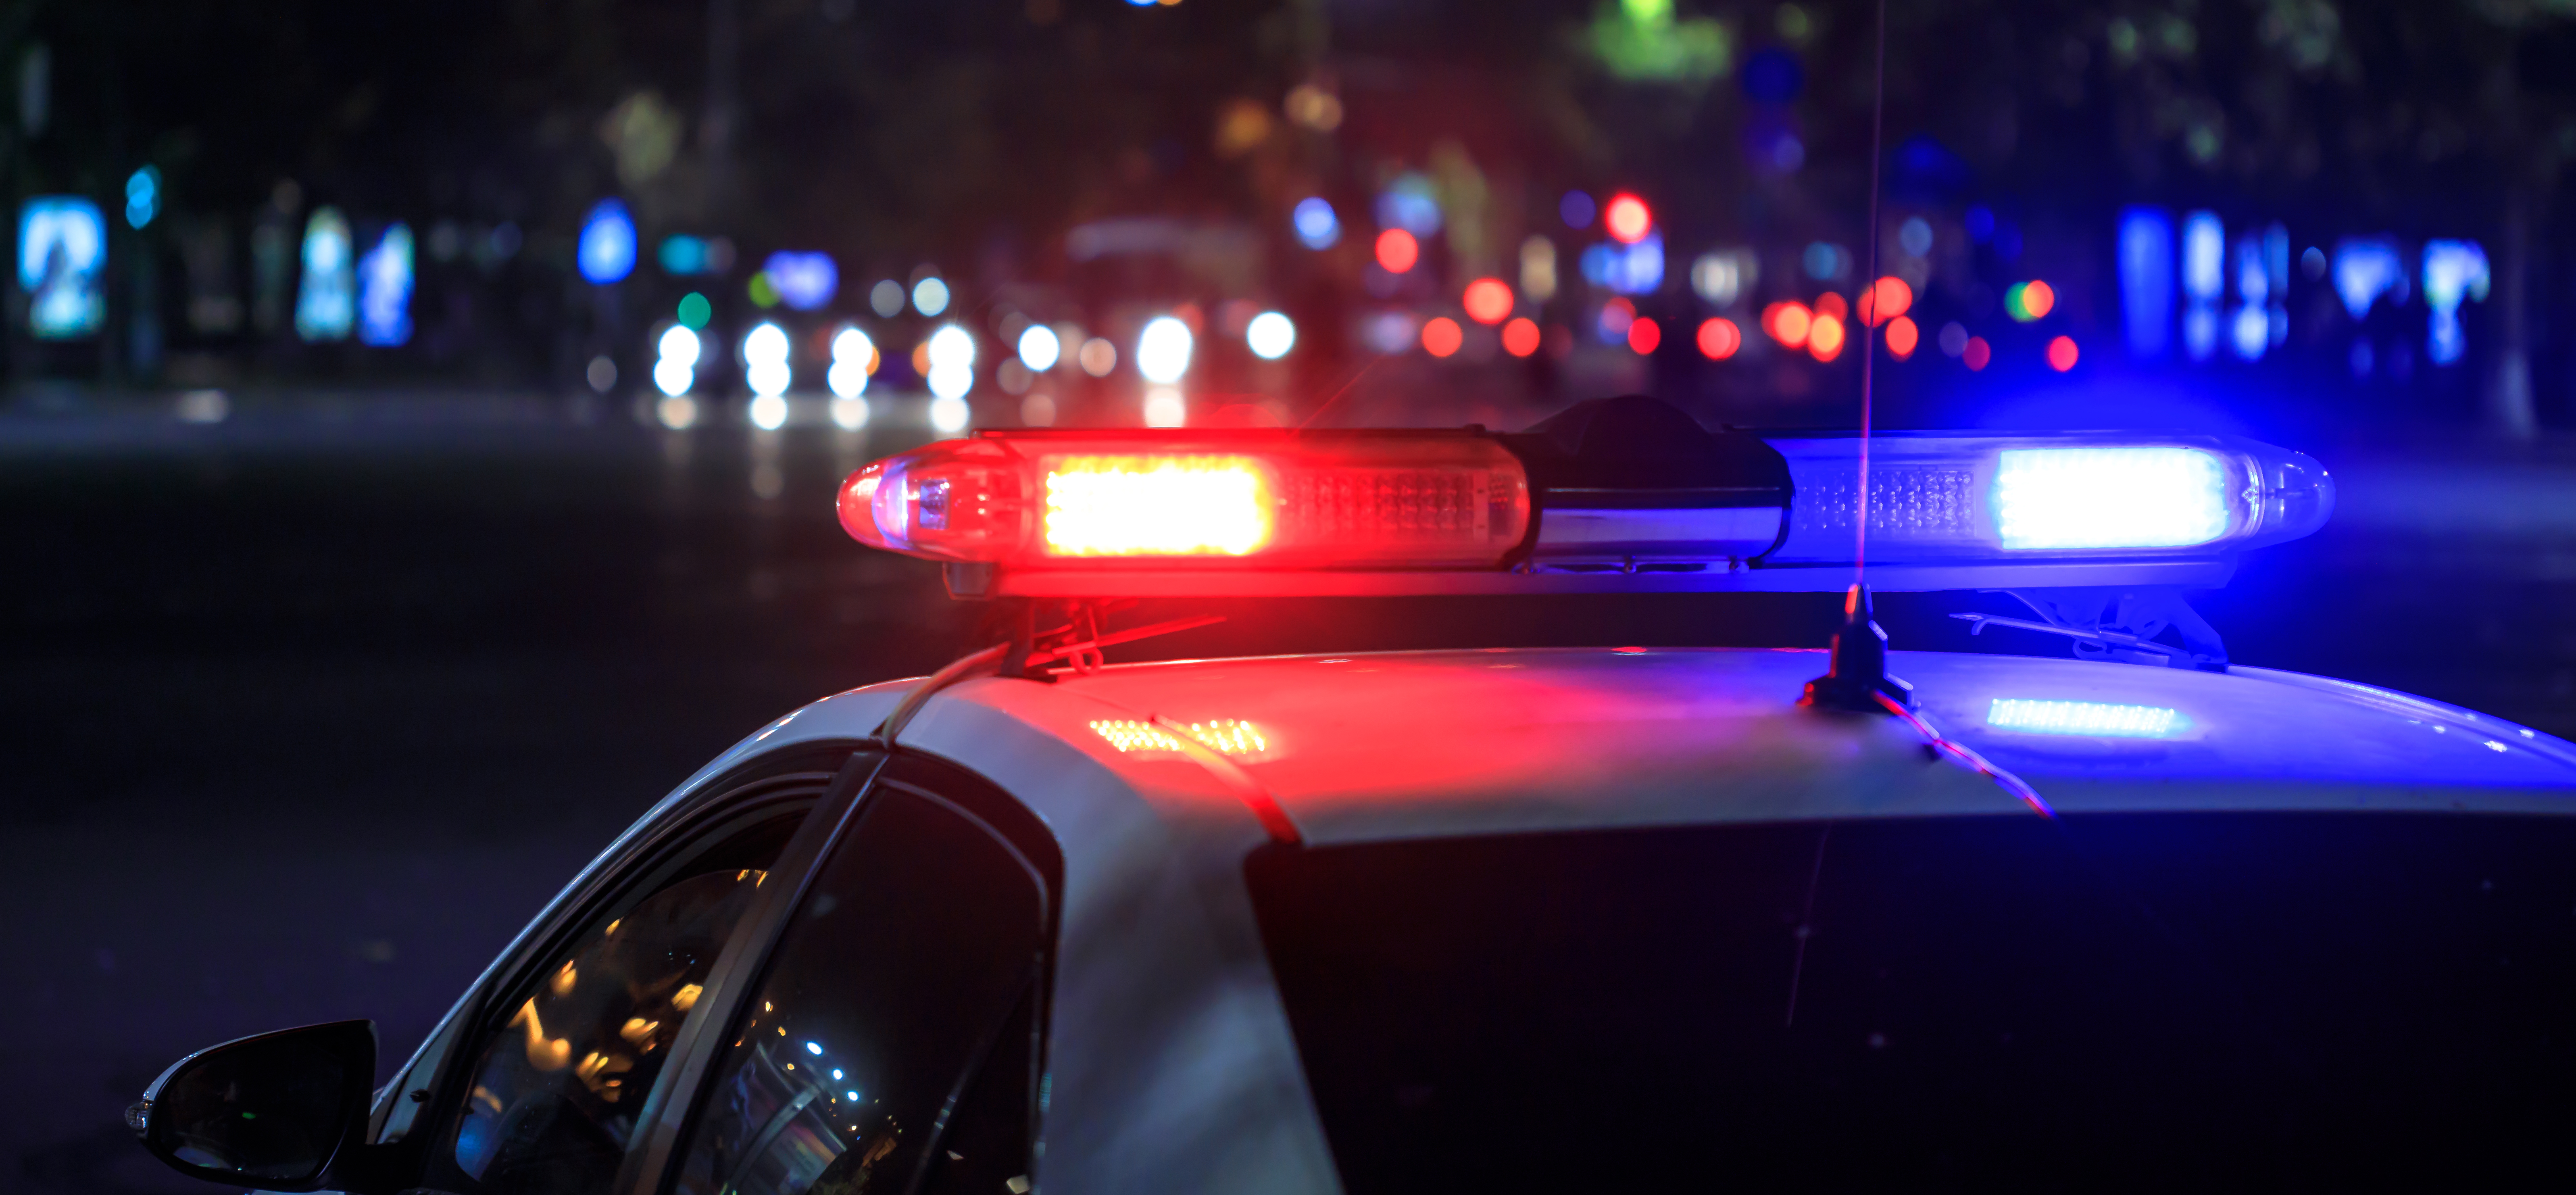 Polizeilichter bei Nacht in der Stadt | Quelle: Shutterstock